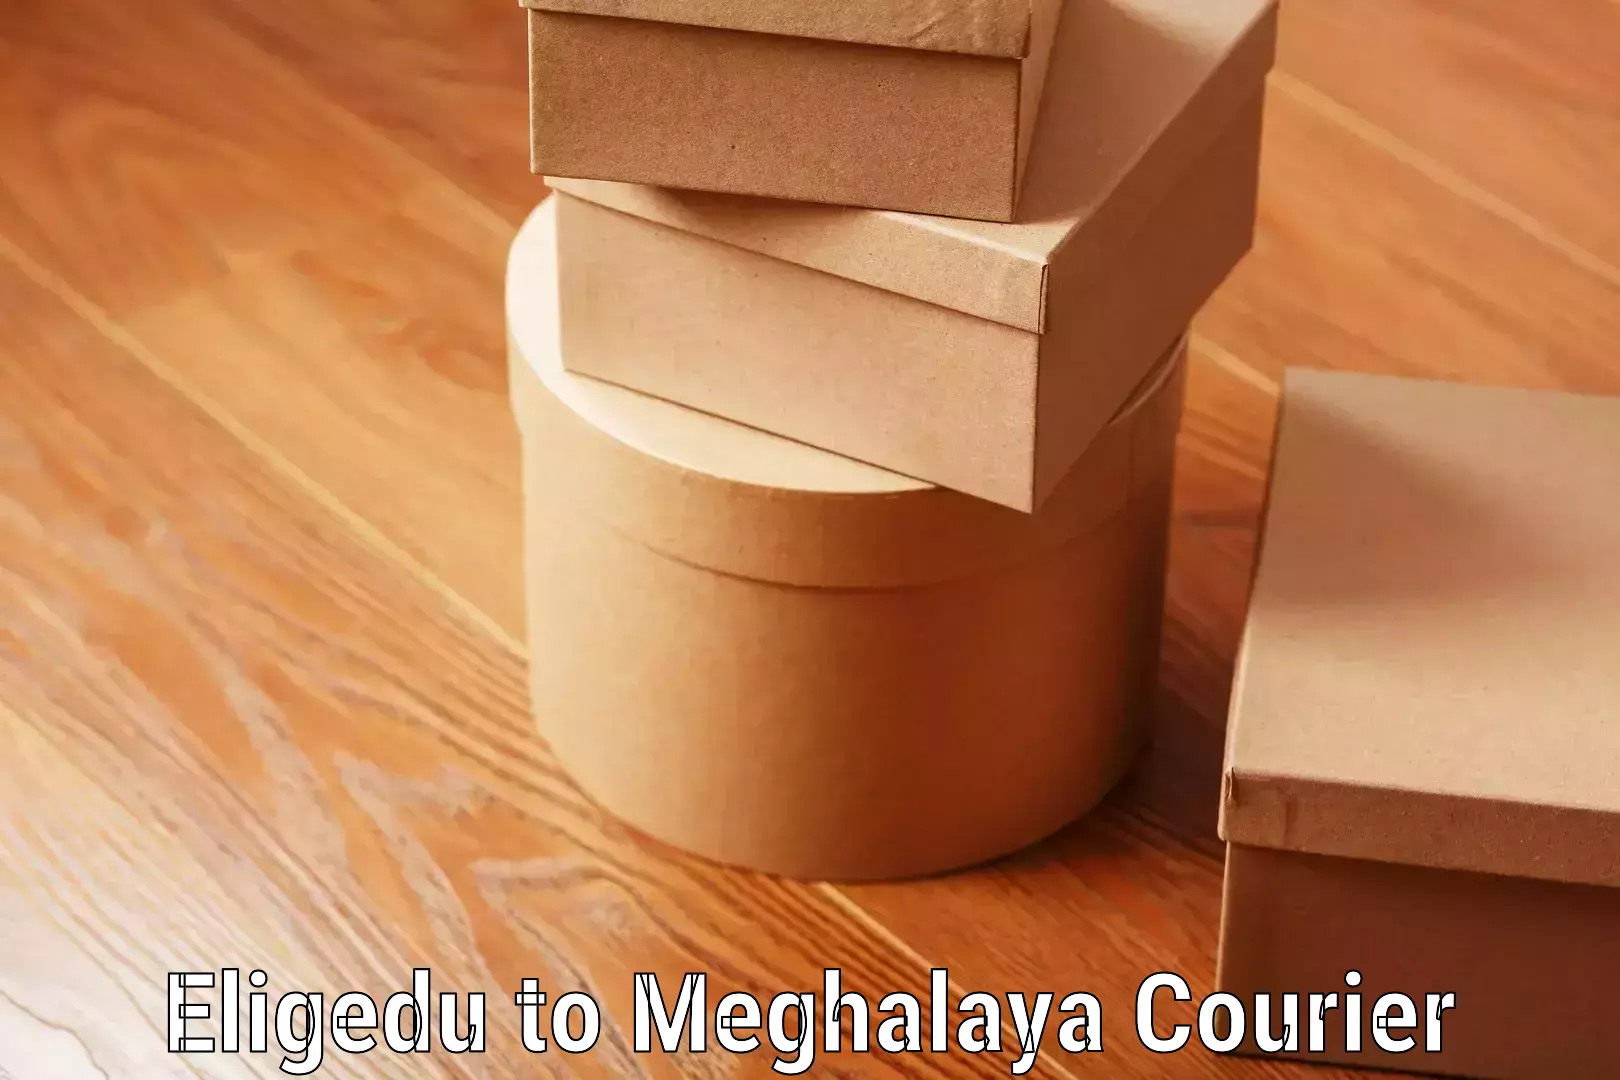 Luggage shipping service Eligedu to Meghalaya